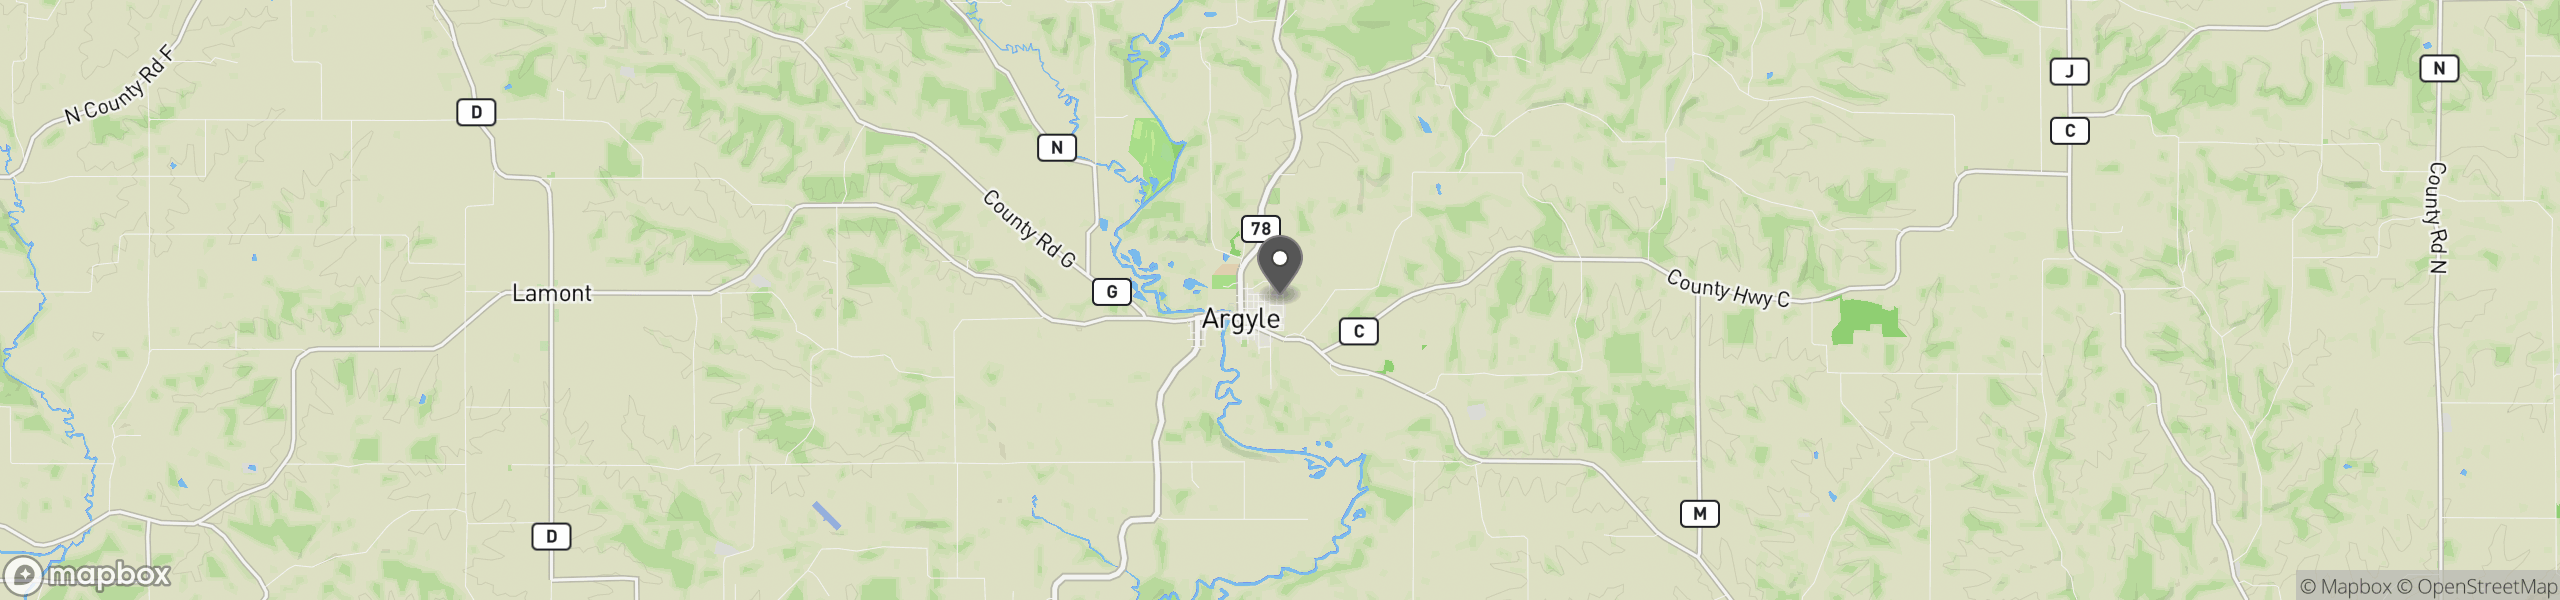 Argyle, WI 53504